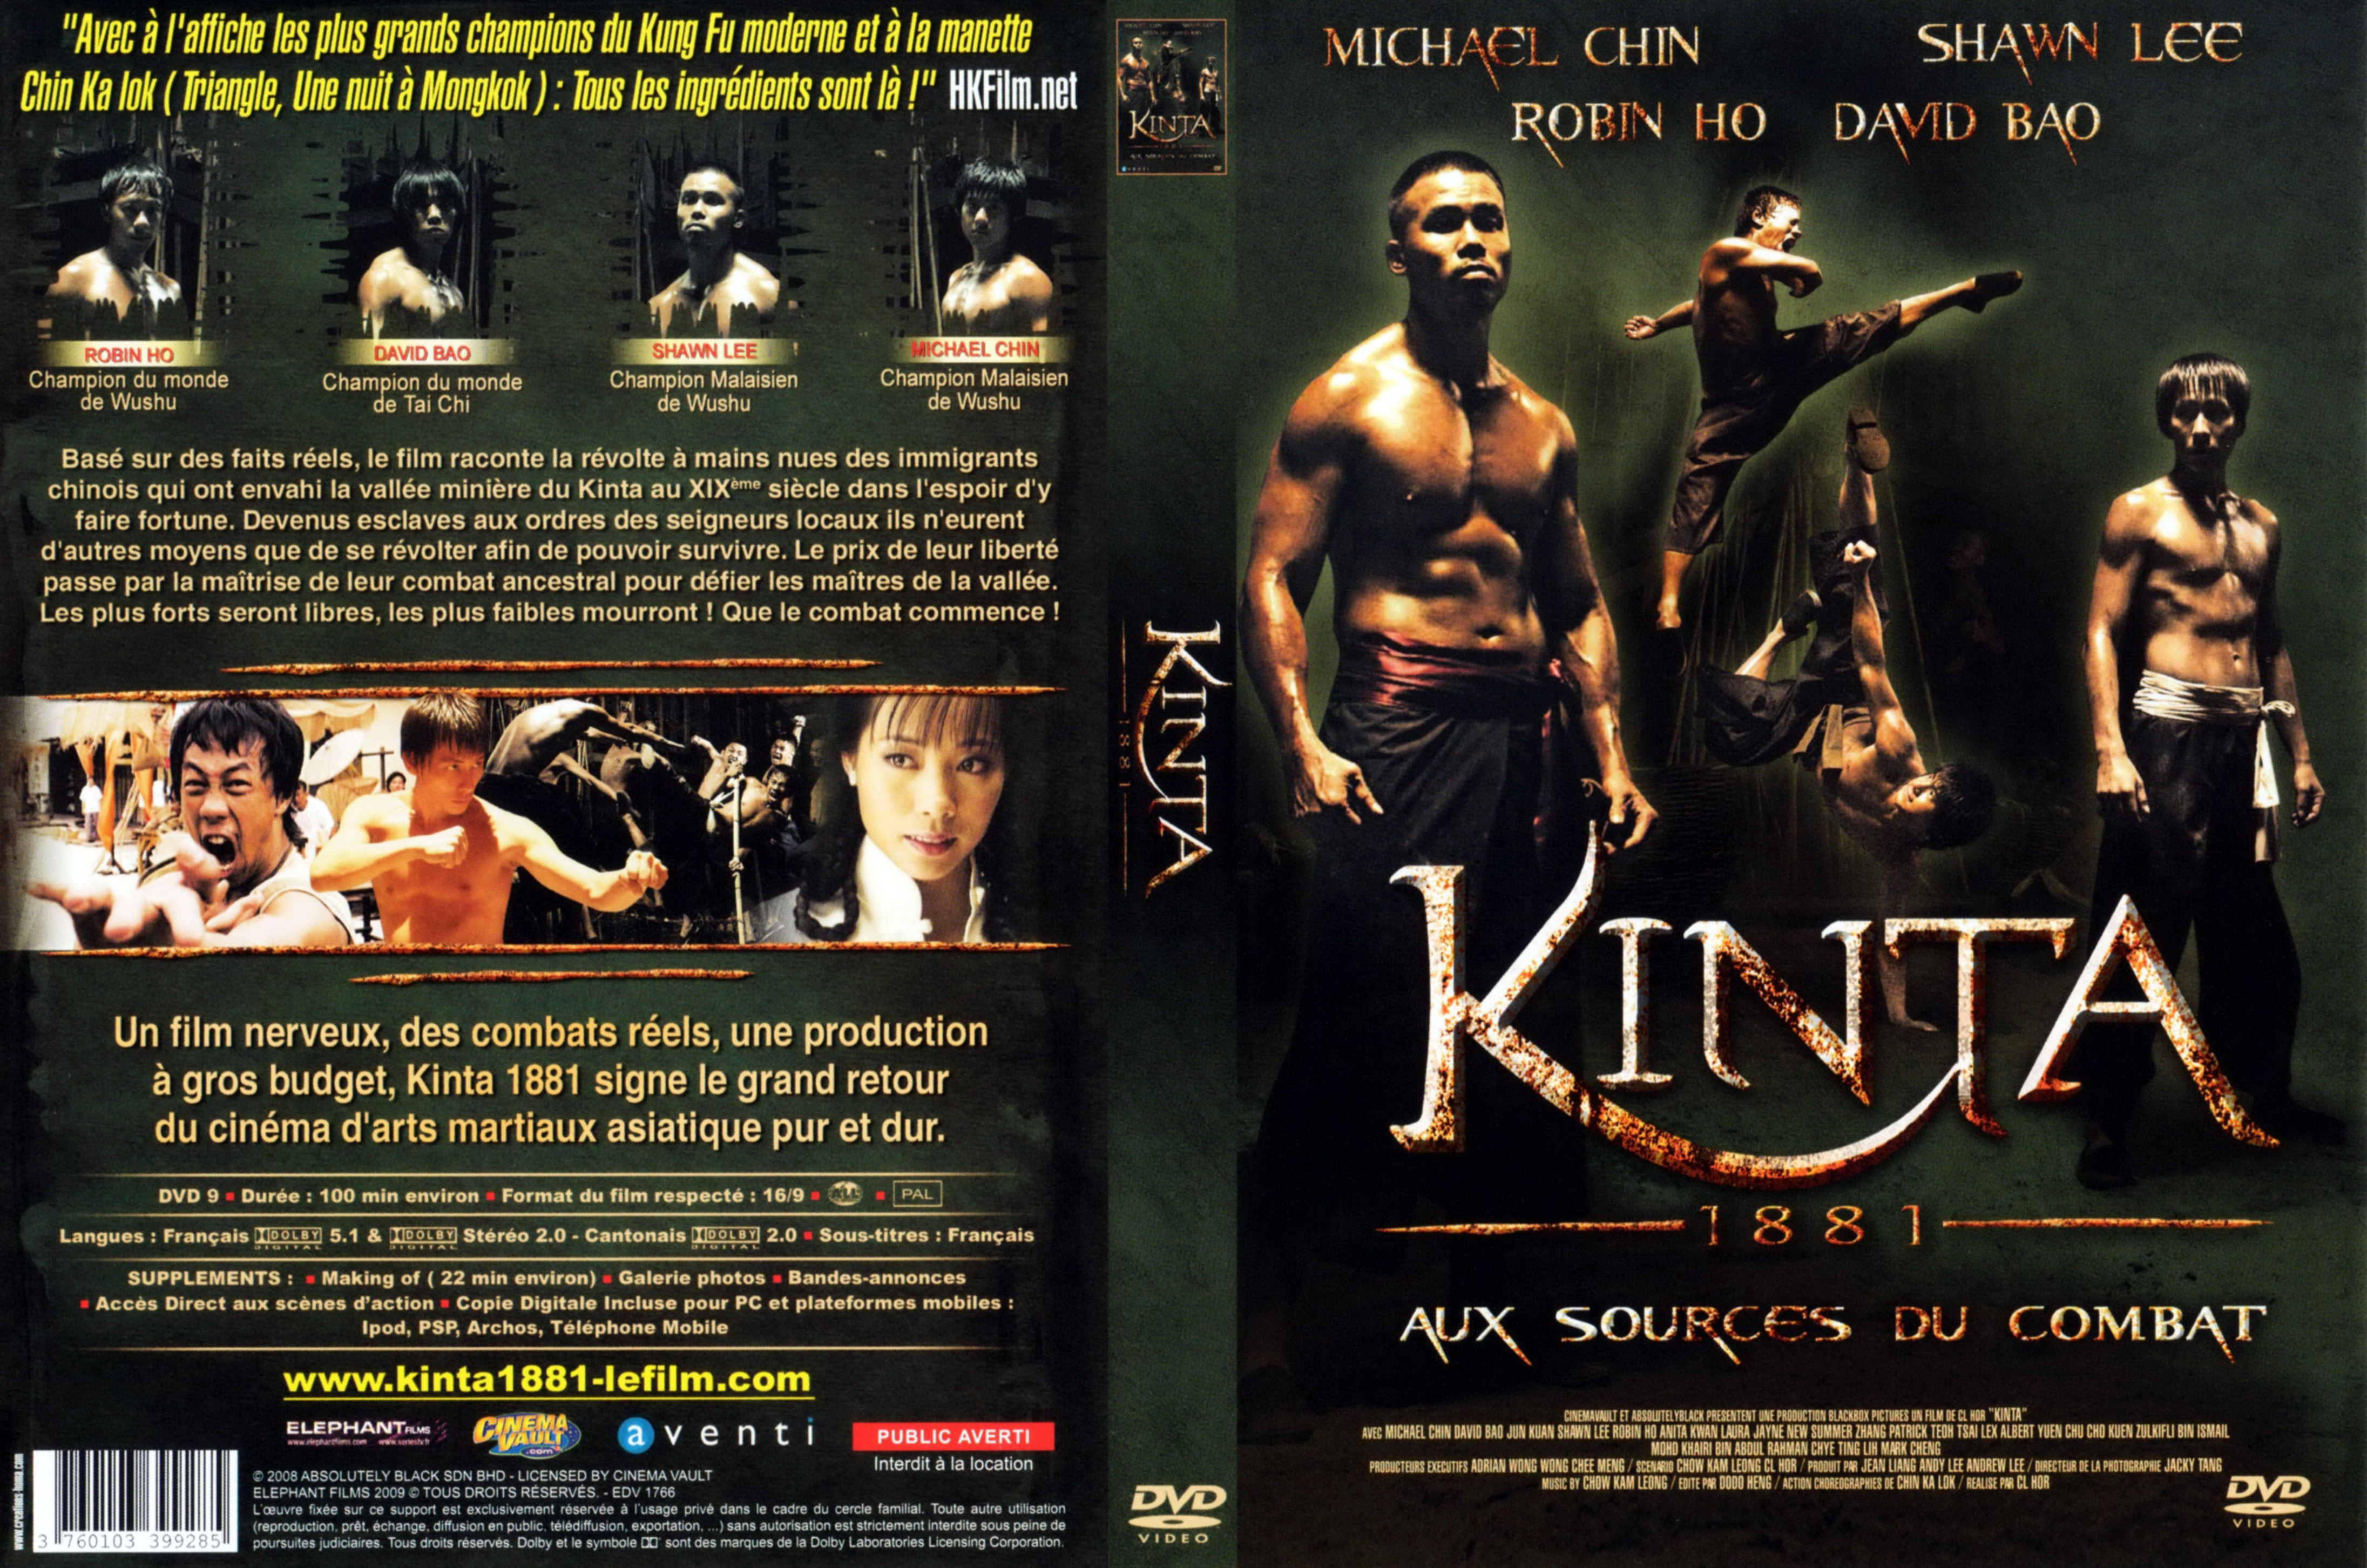 Jaquette DVD Kinta 1881 aux sources du combat